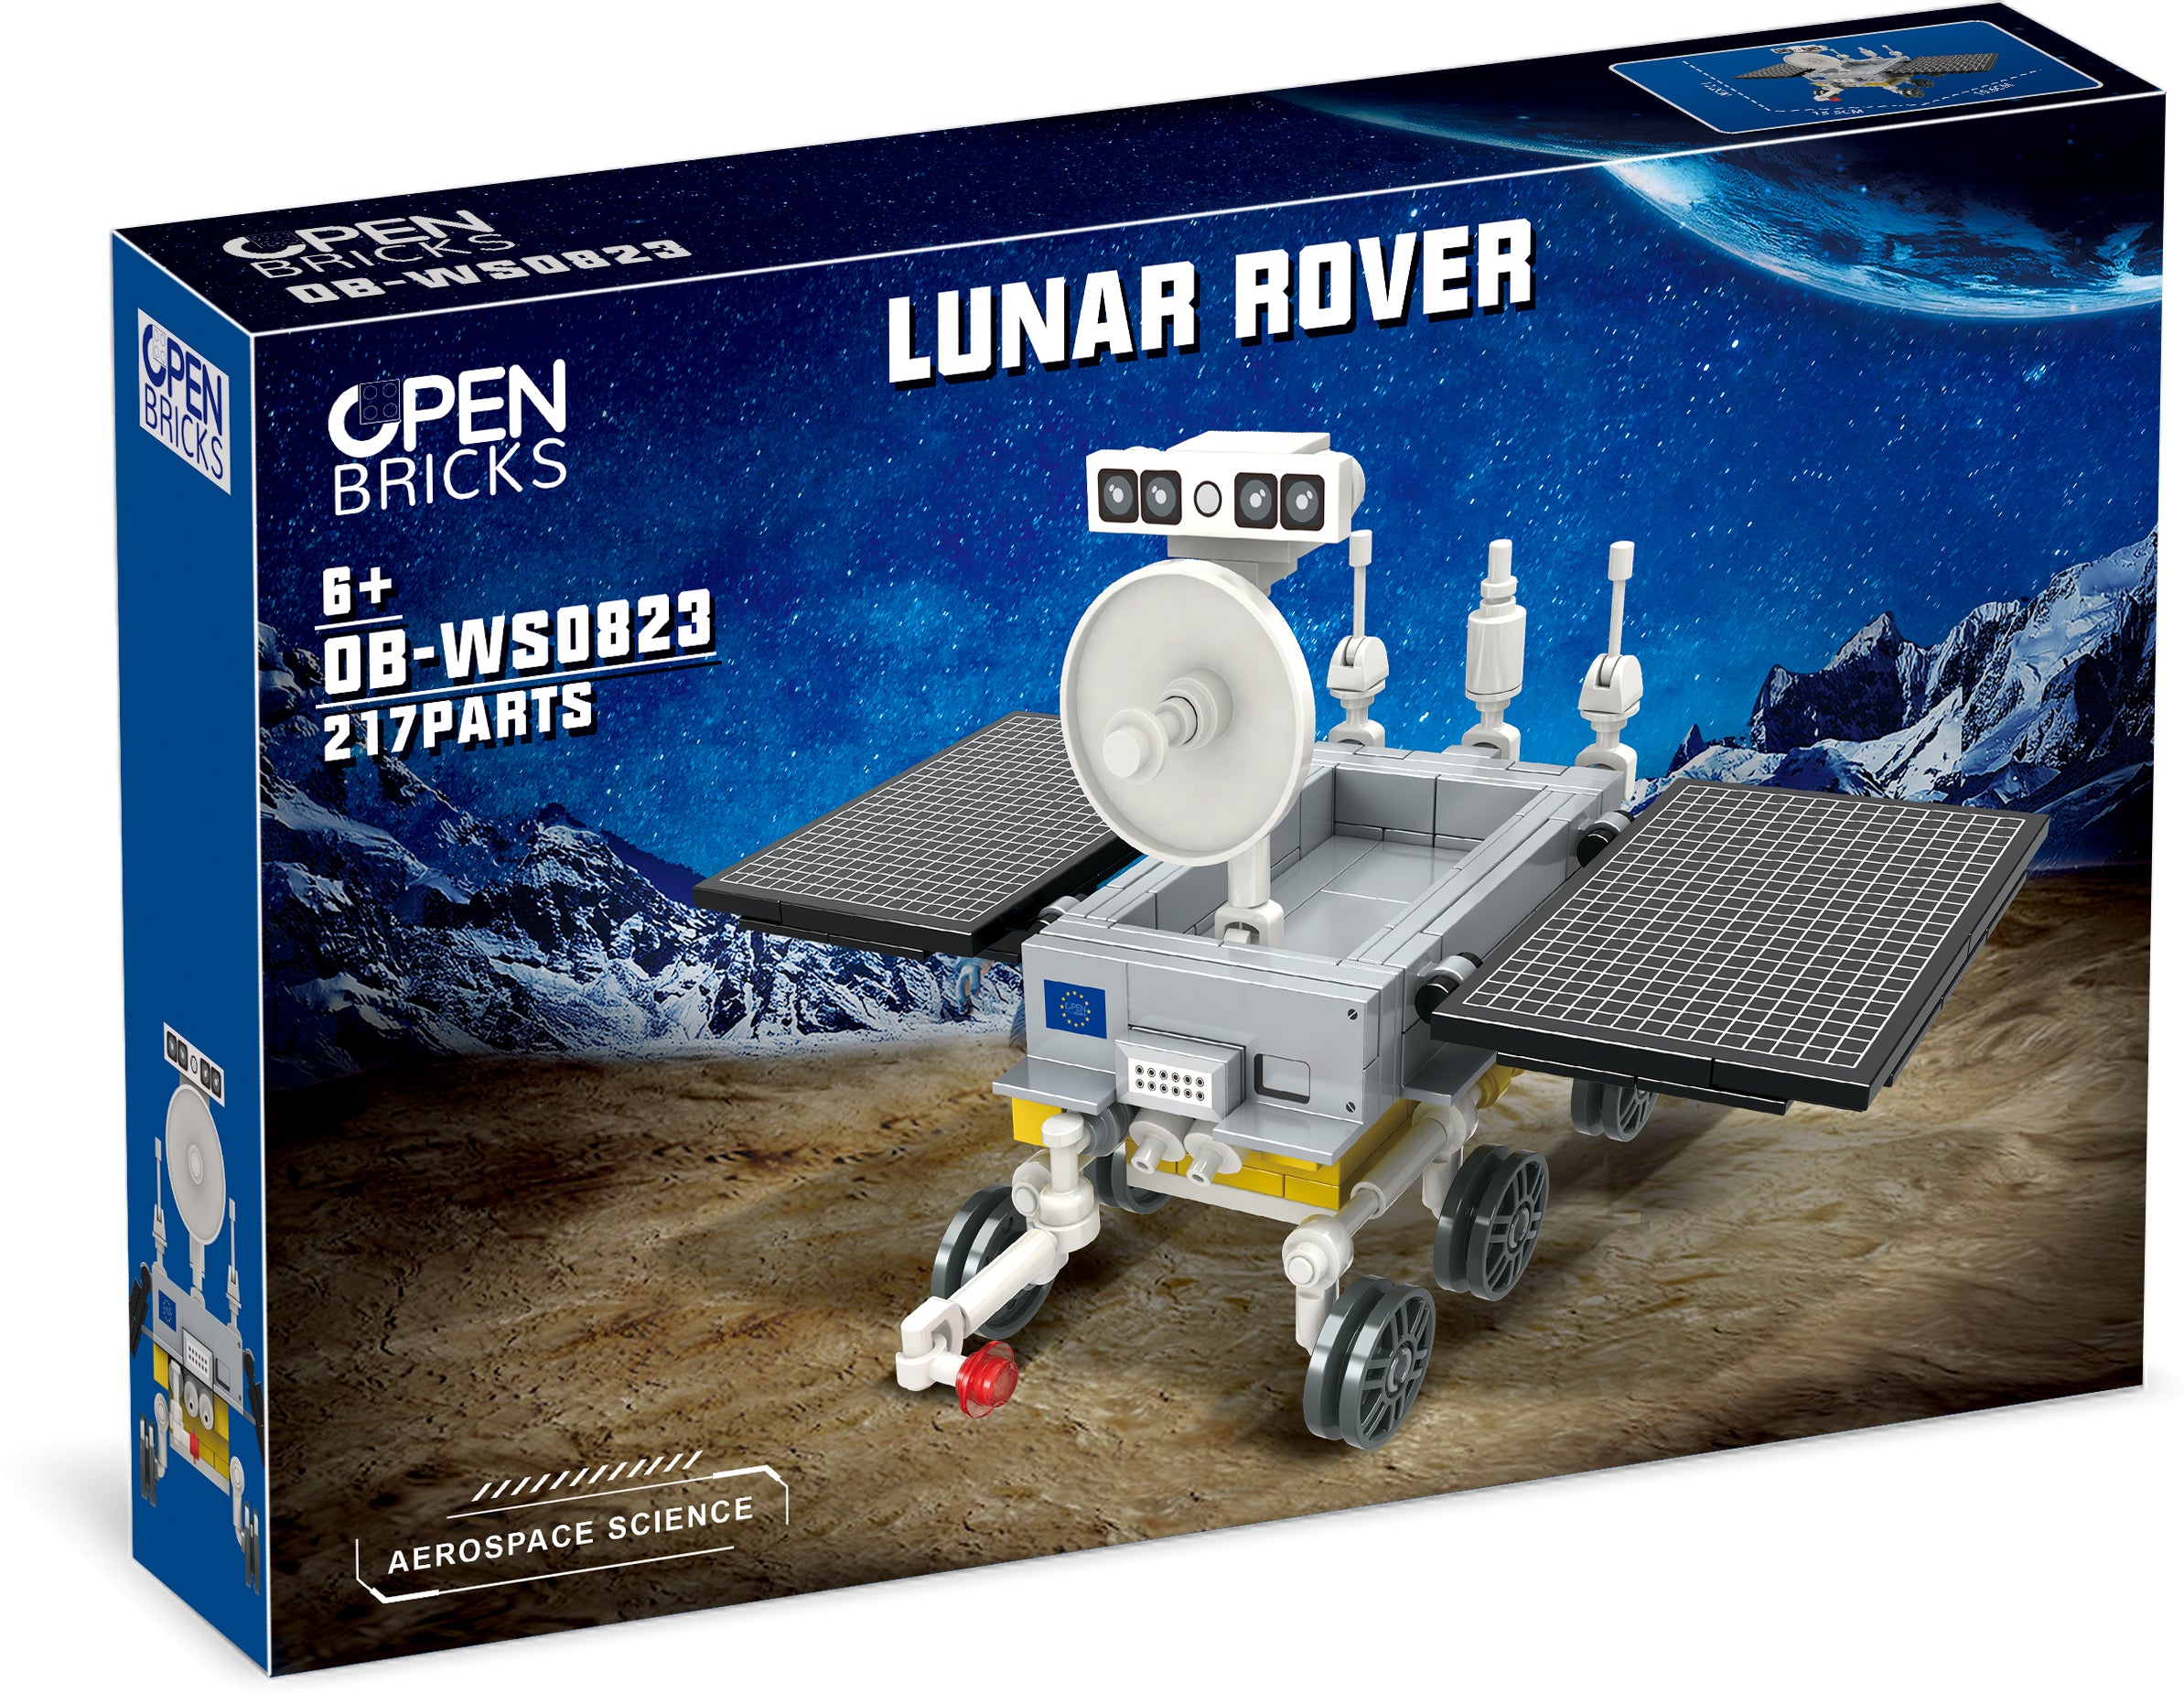 open-bricks-lunar-rover